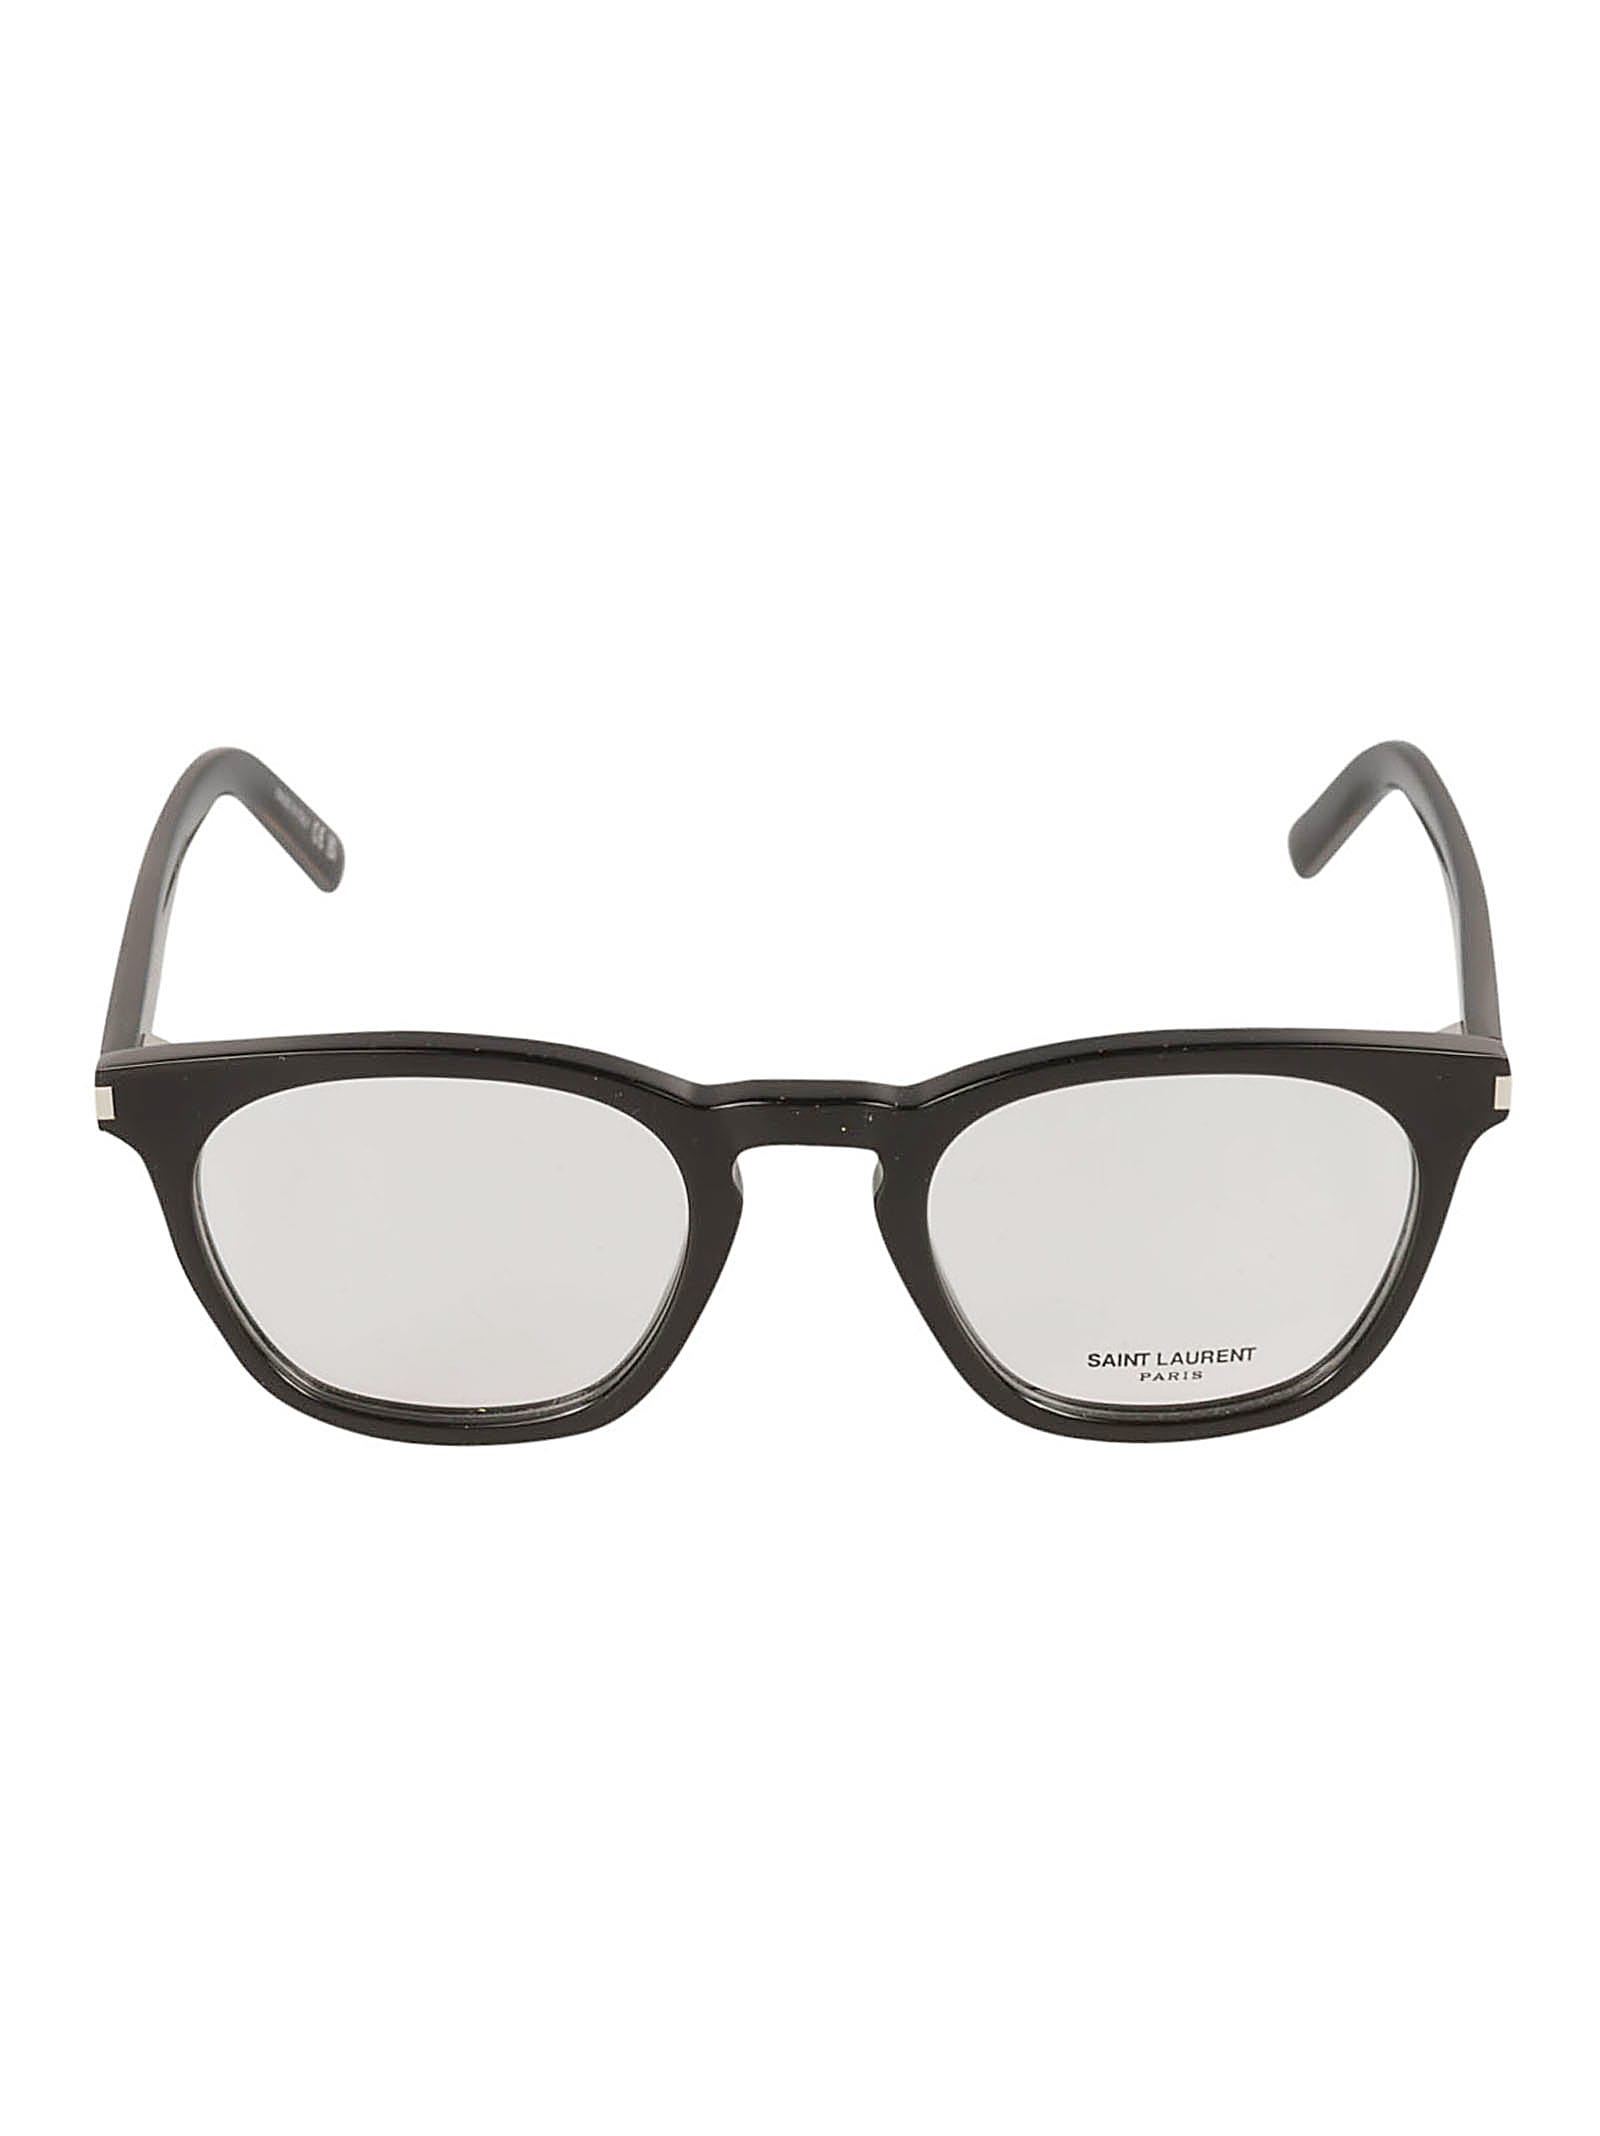 Saint Laurent Round Frame Classic Glasses In Black/transparent